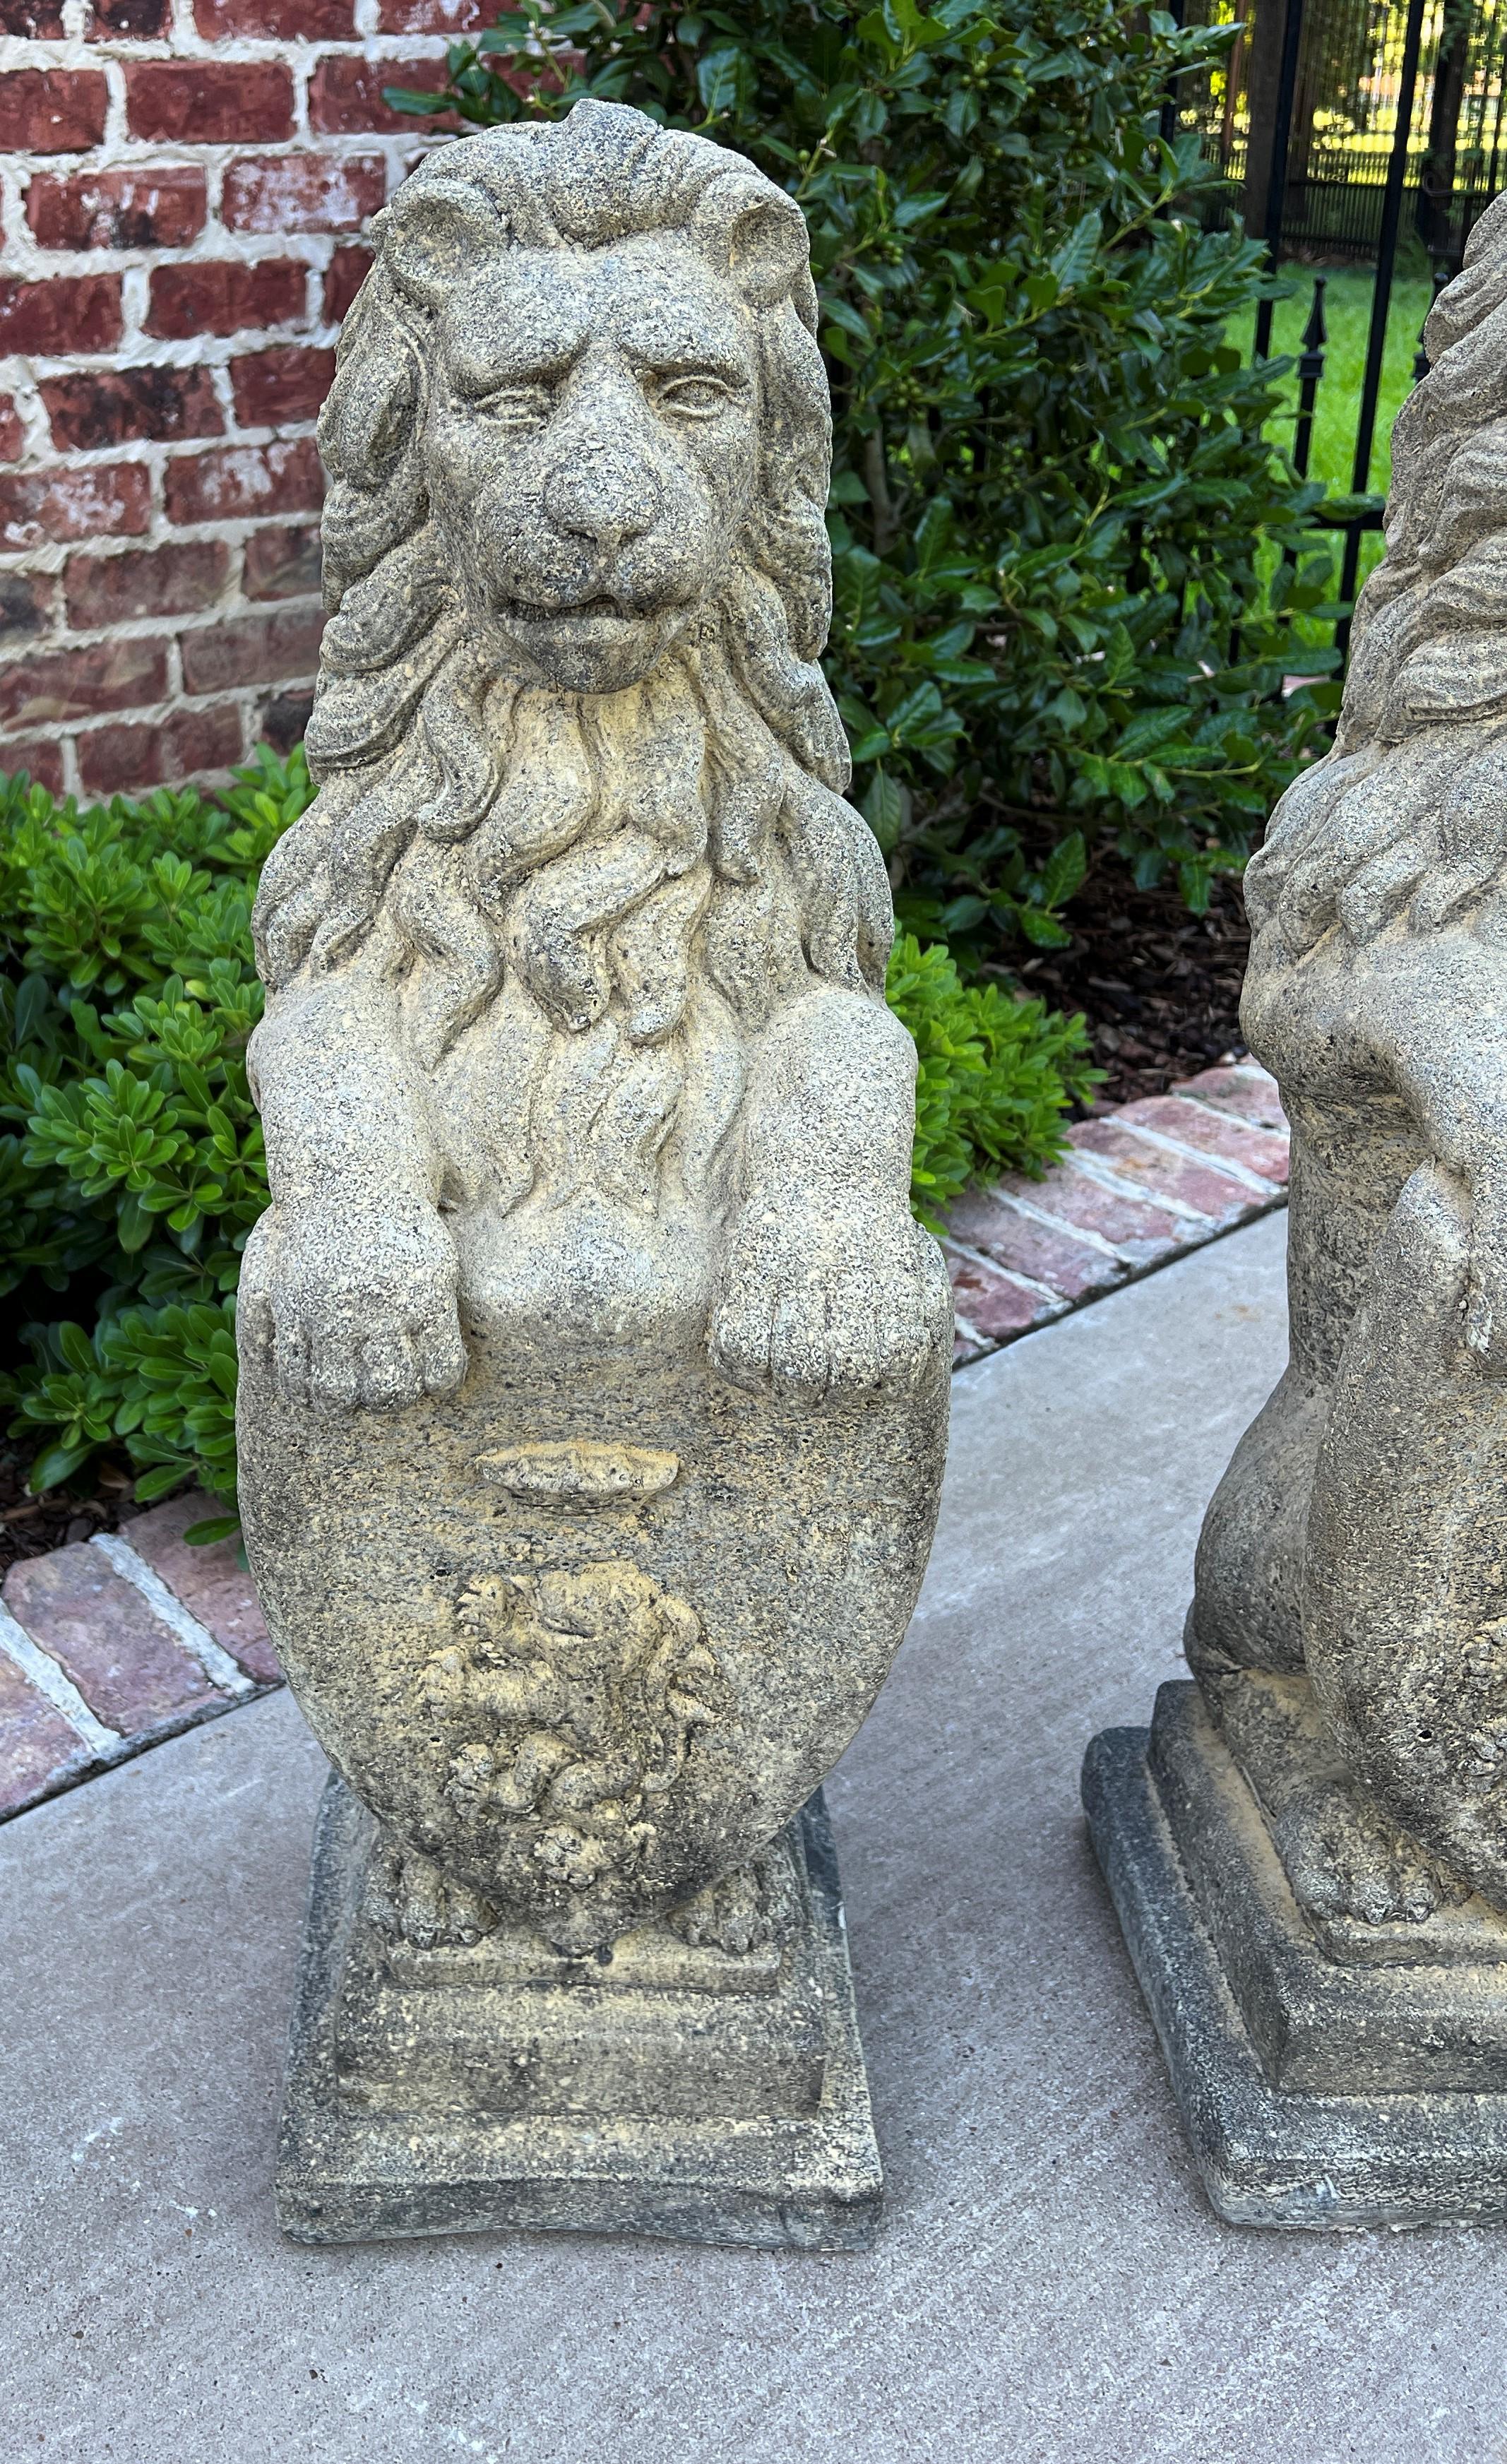 Vintage English Statues Garden Figures Lions Shield Cast Stone Pair, #1 5